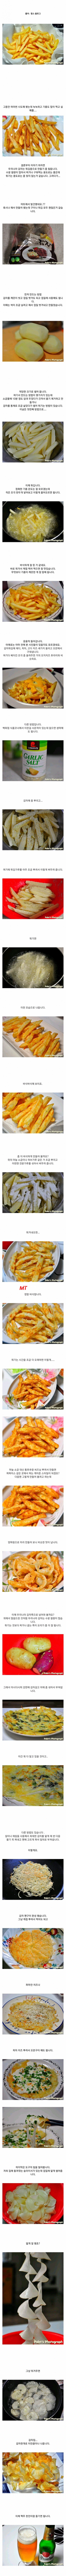 전설의 감자튀김 장인